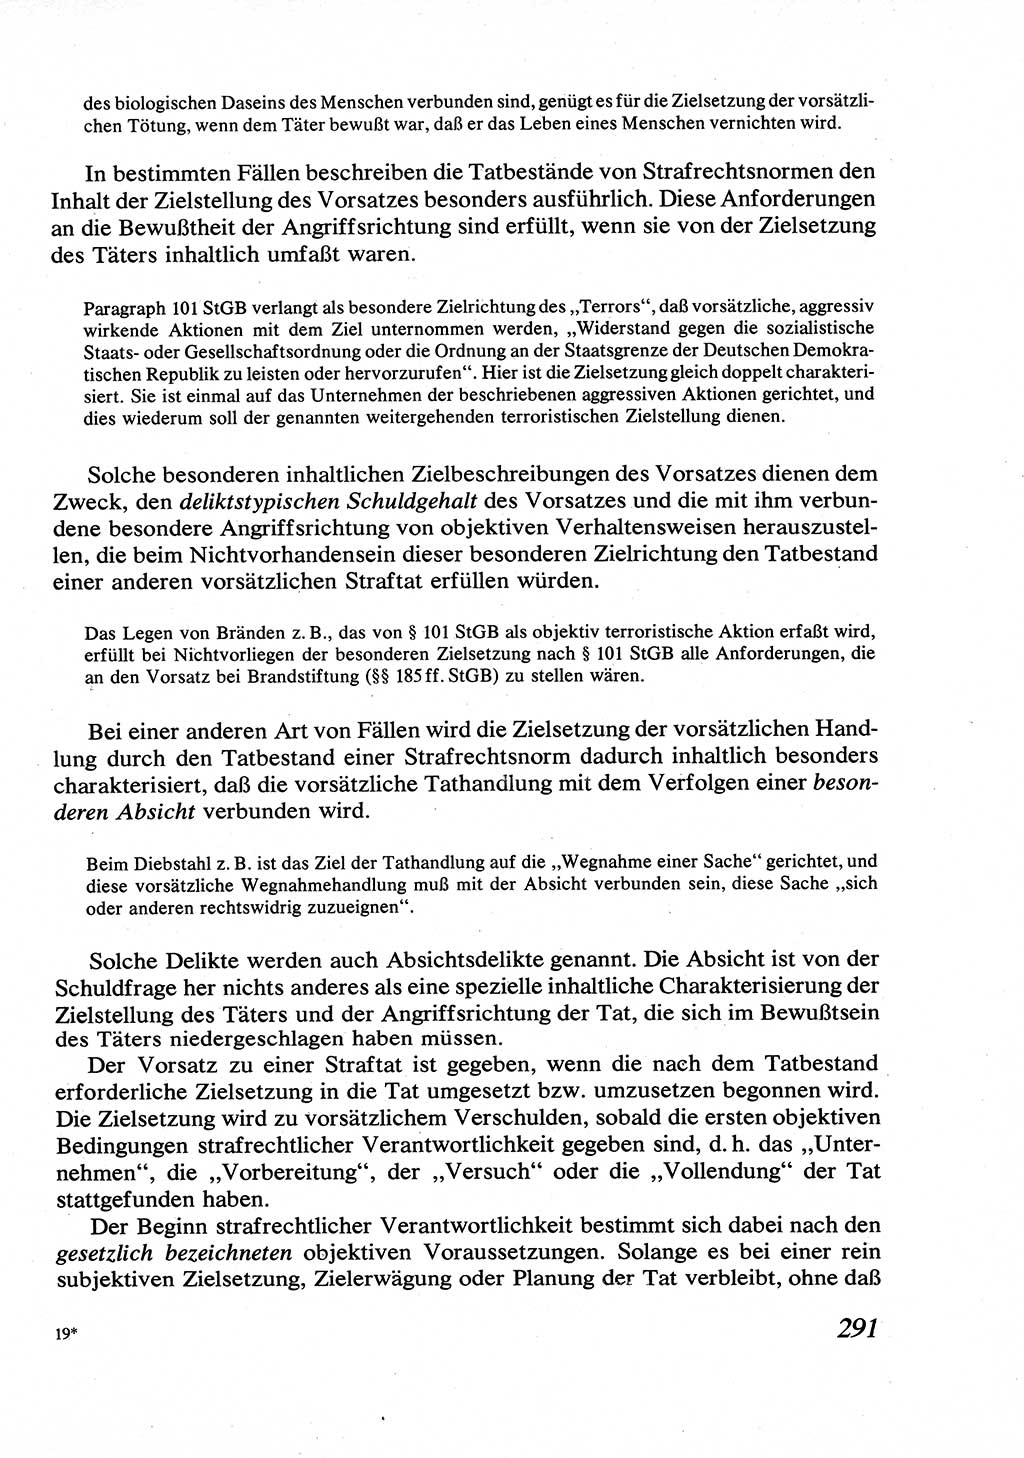 Strafrecht [Deutsche Demokratische Republik (DDR)], Allgemeiner Teil, Lehrbuch 1976, Seite 291 (Strafr. DDR AT Lb. 1976, S. 291)